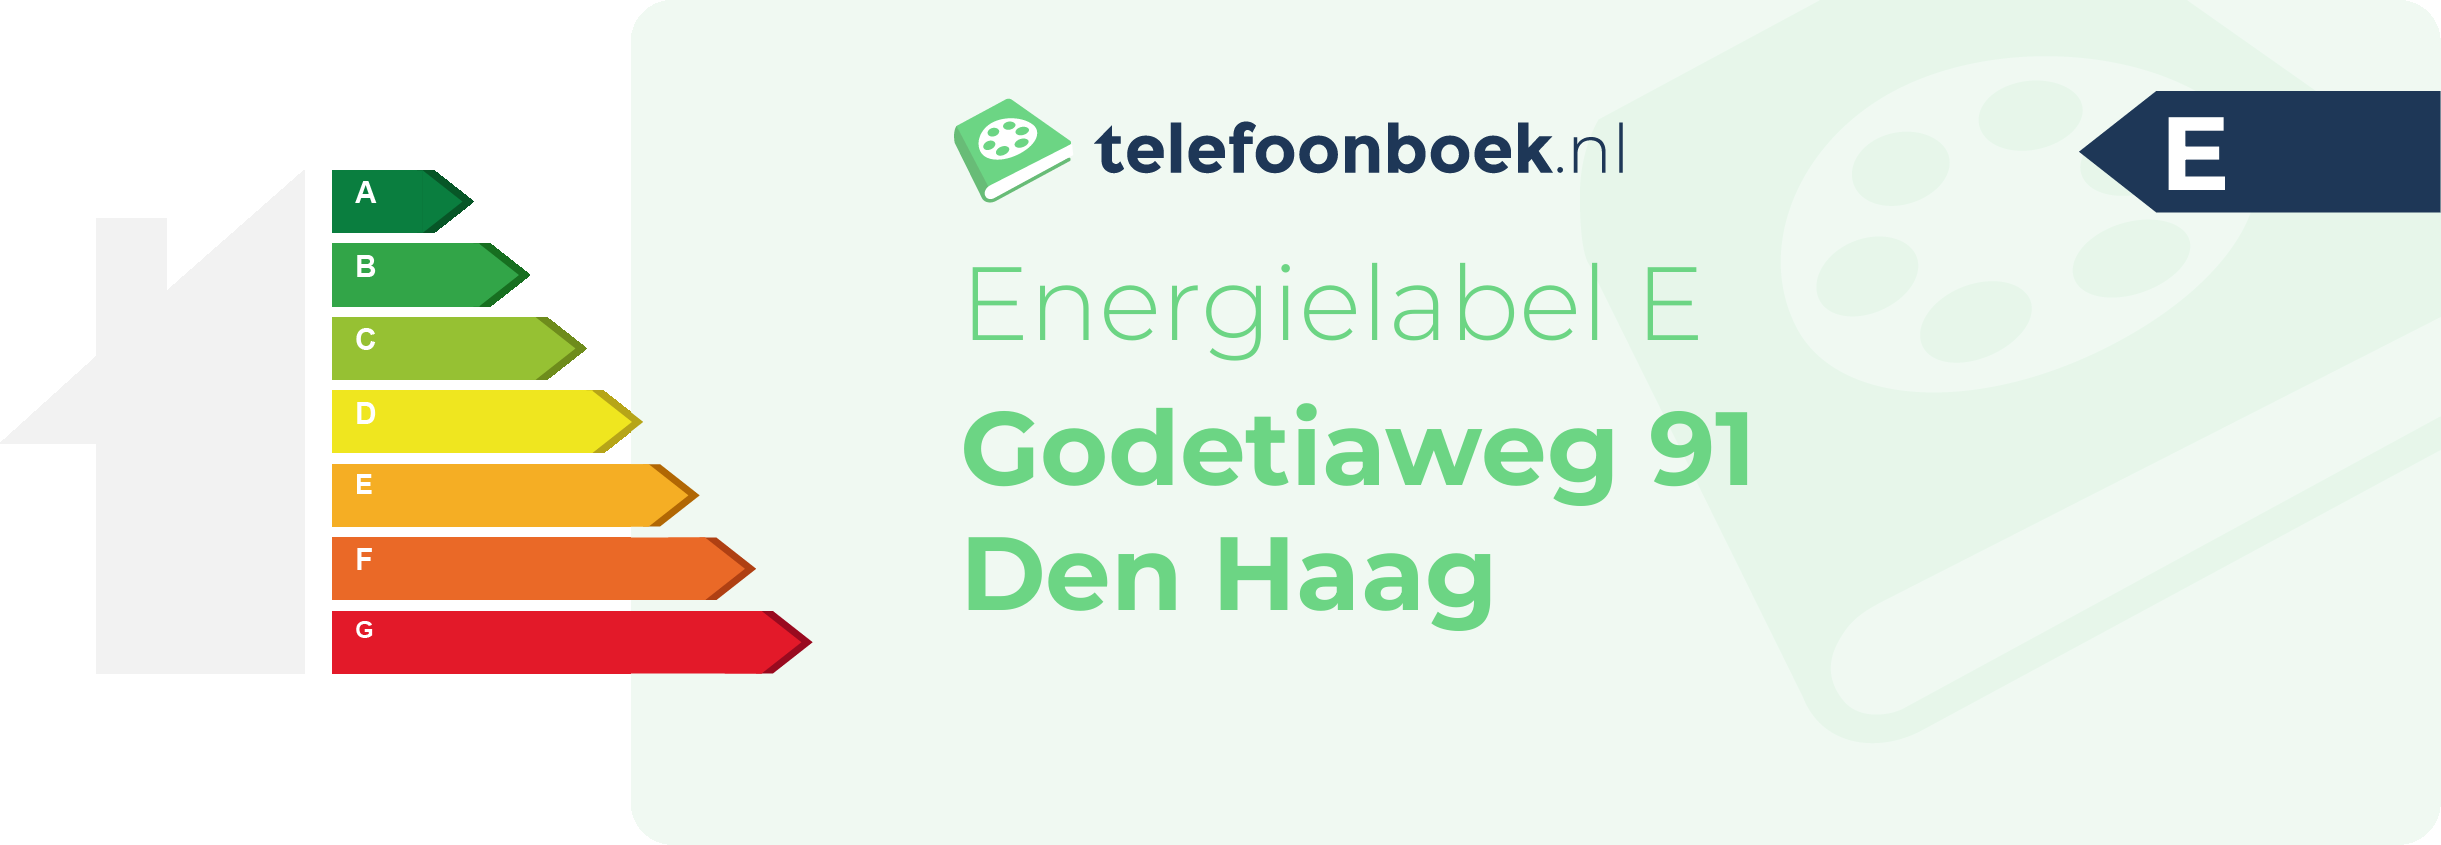 Energielabel Godetiaweg 91 Den Haag